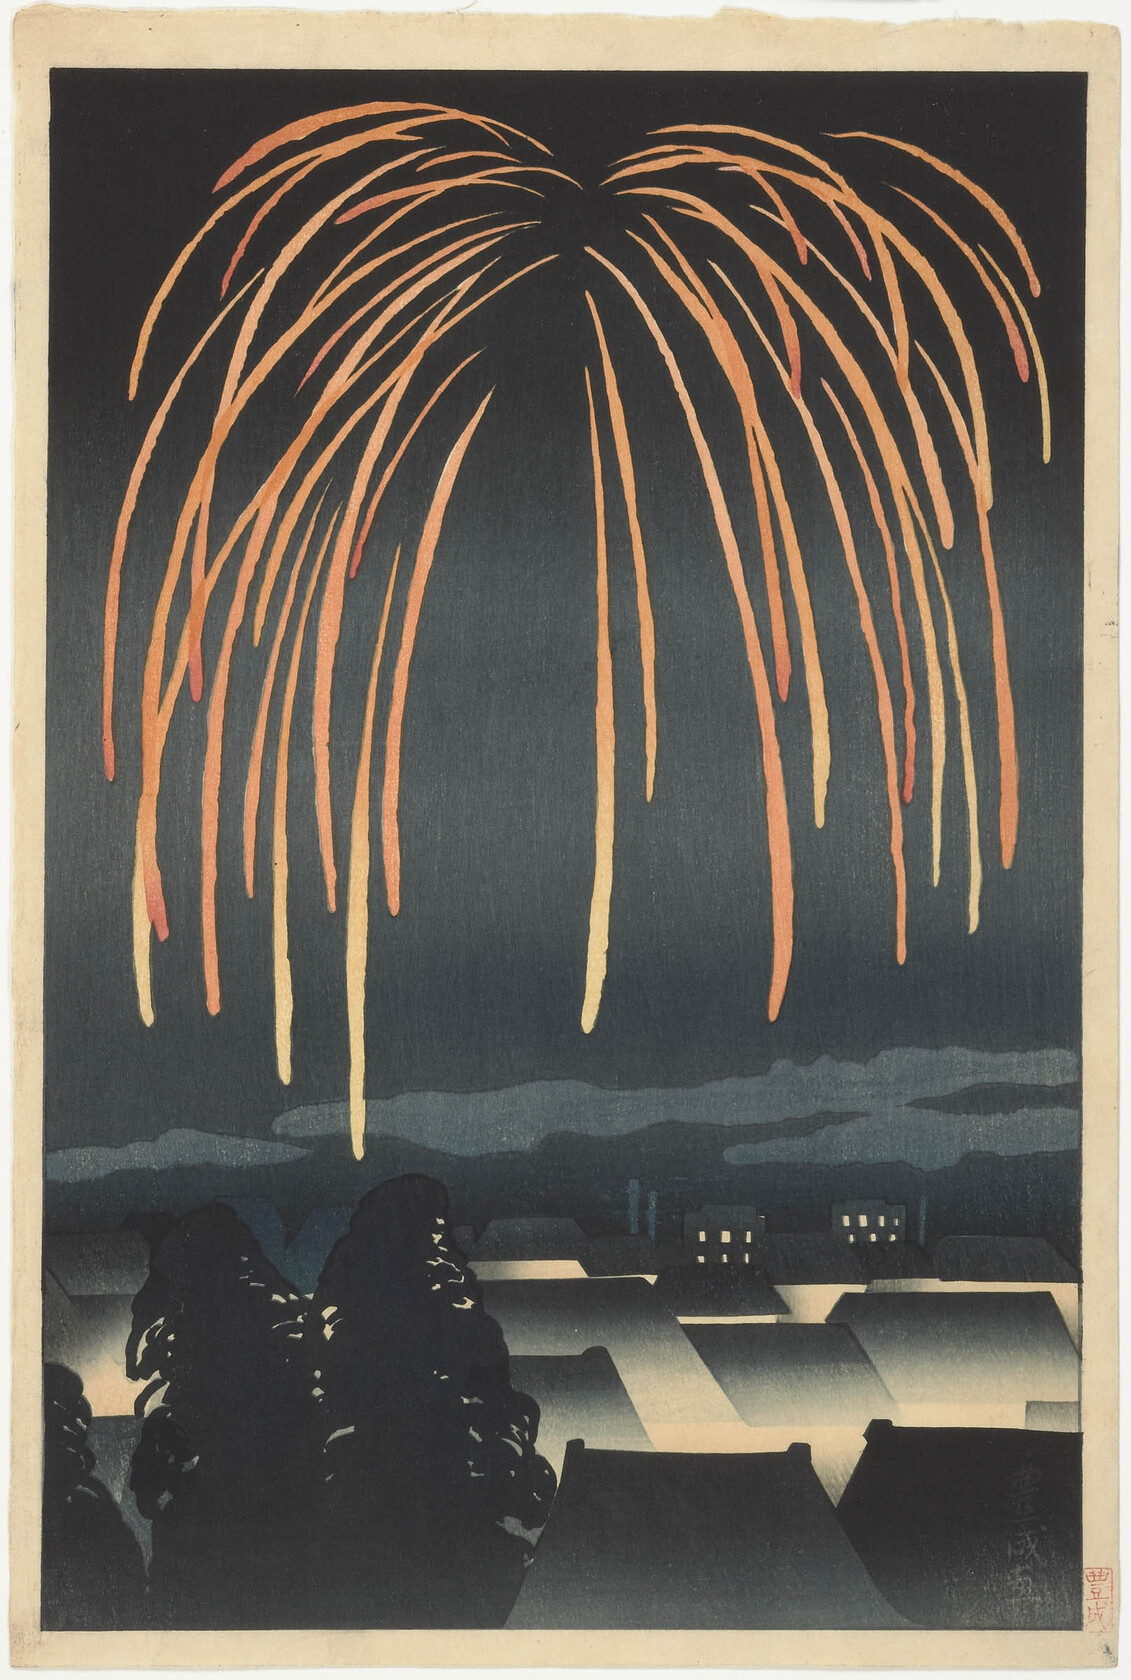 節日之夜煙花 by Yamamura Toyonari (Kôka) - 1924 年 - 39.53 × 26.51 釐米 